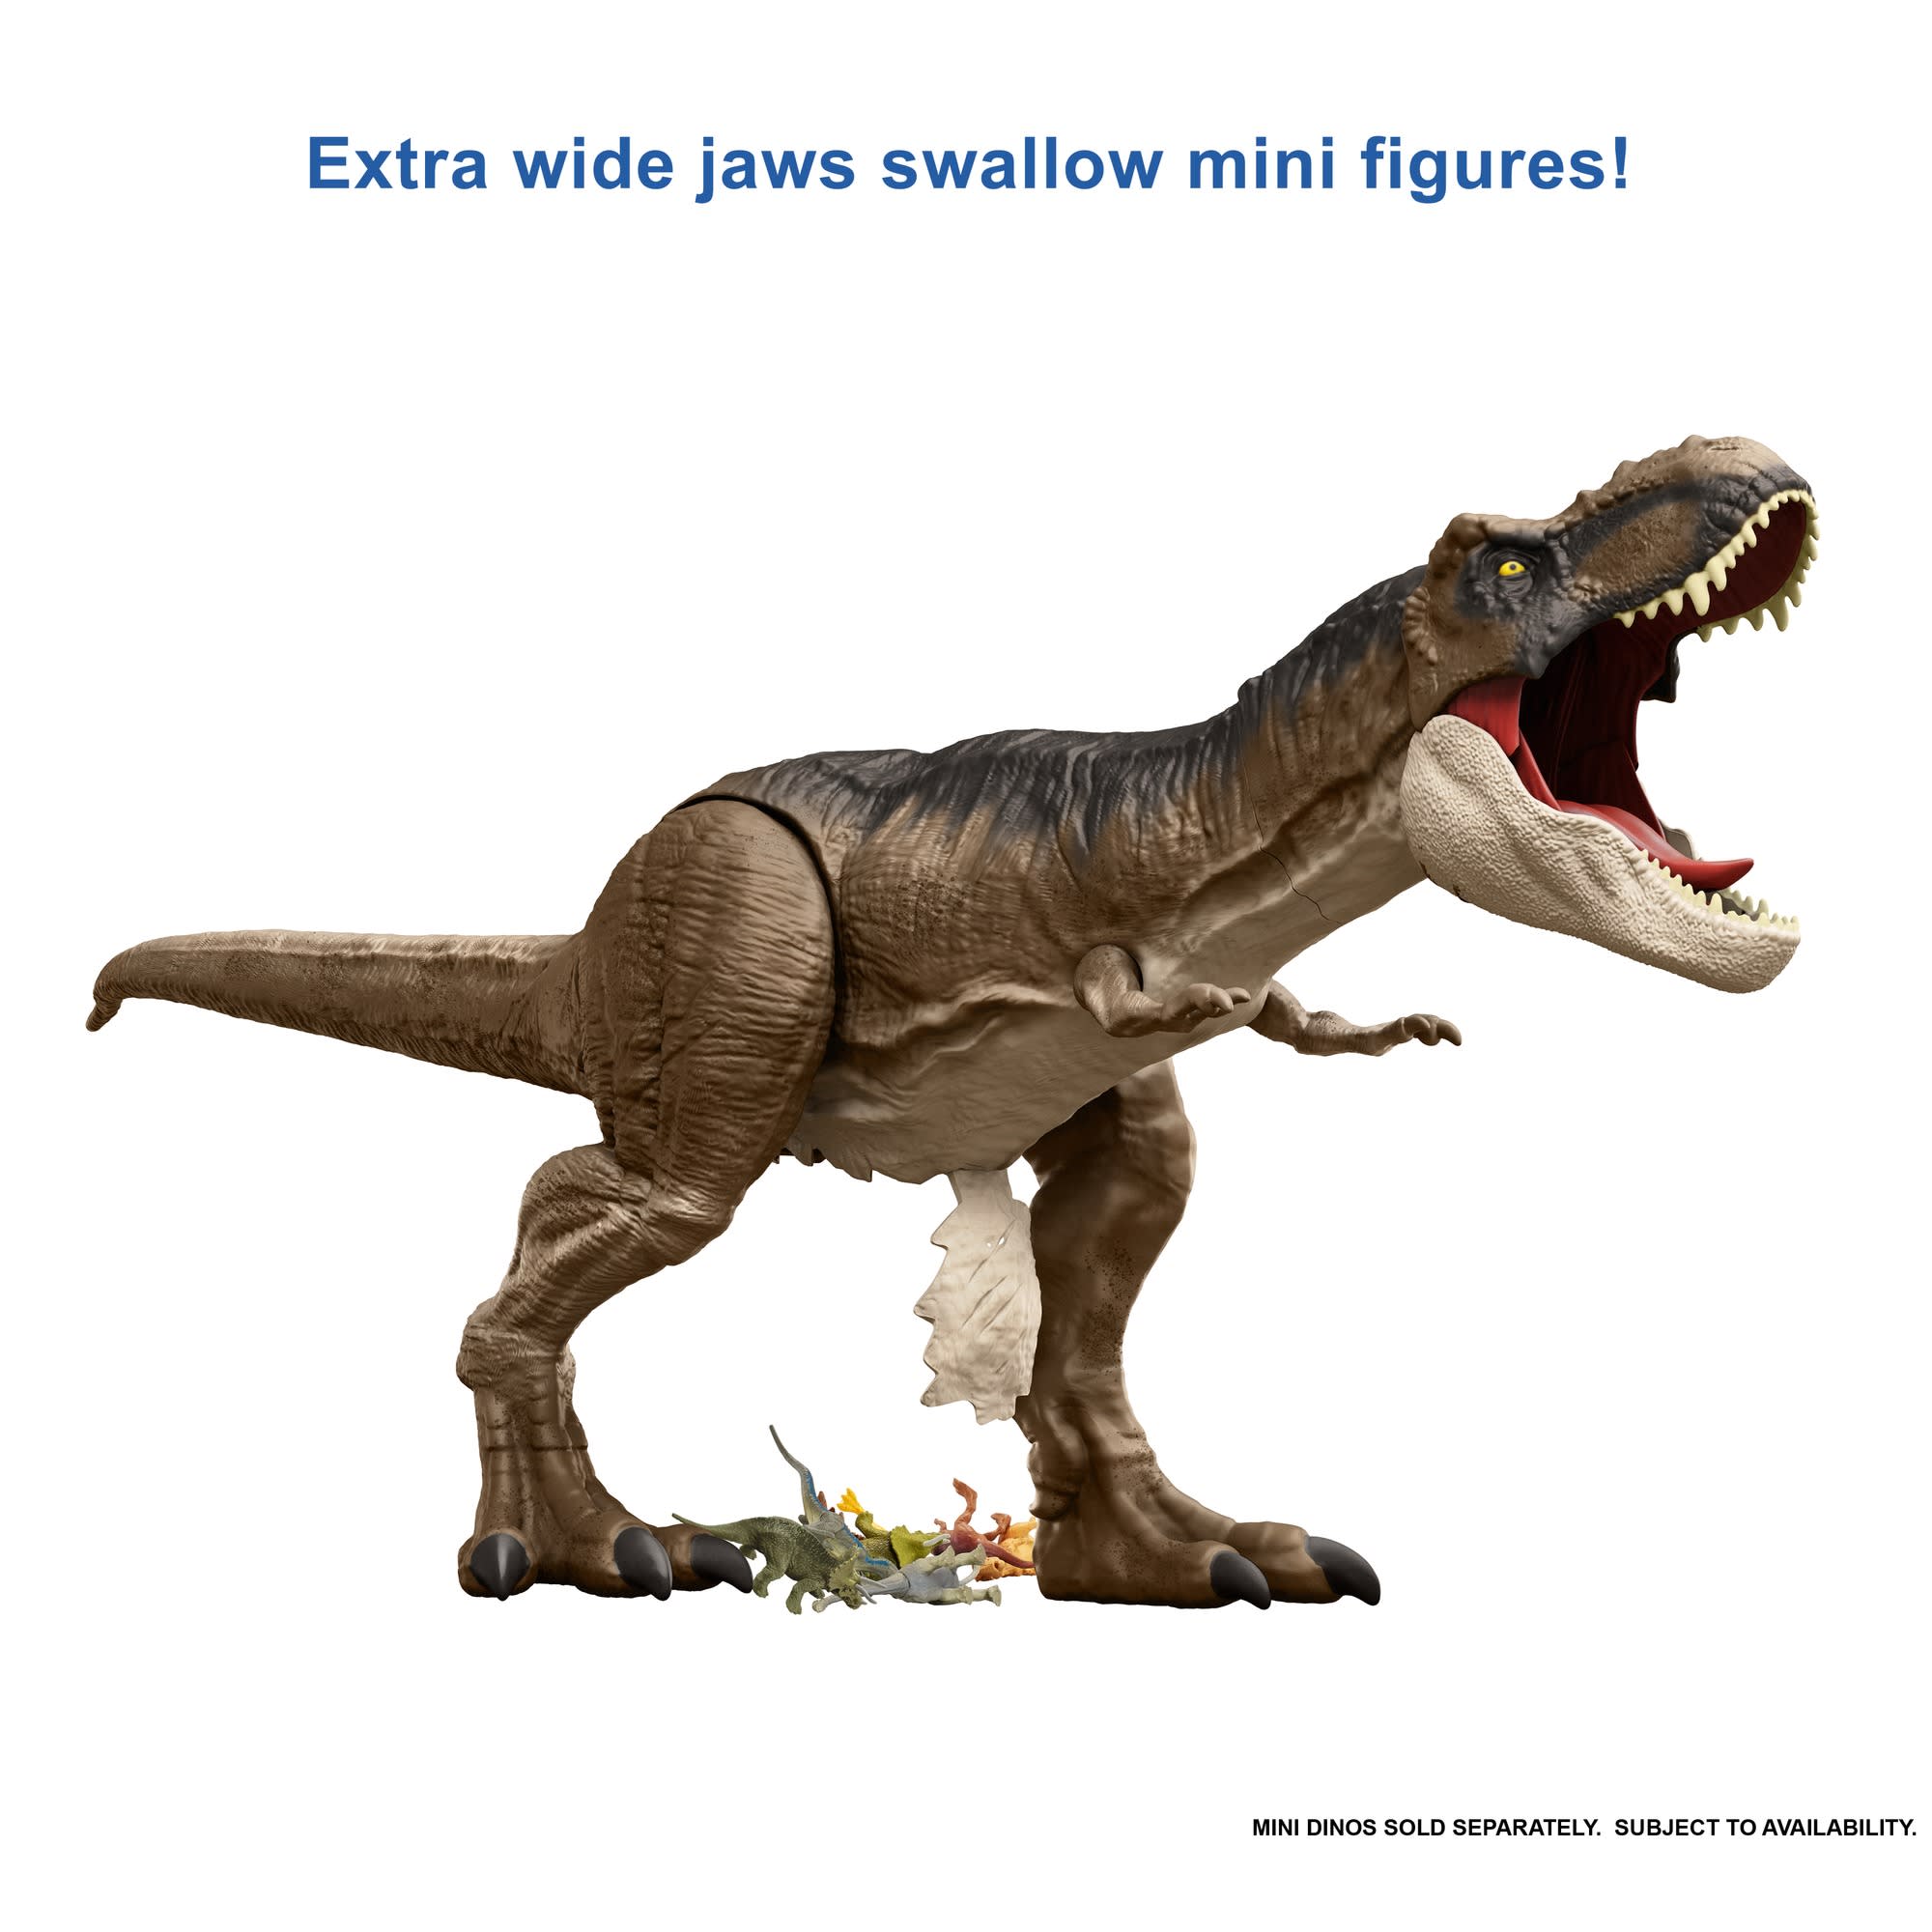 Soldes Mattel Jurassic World Stomp 'N Escape Tyrannosaurus Rex